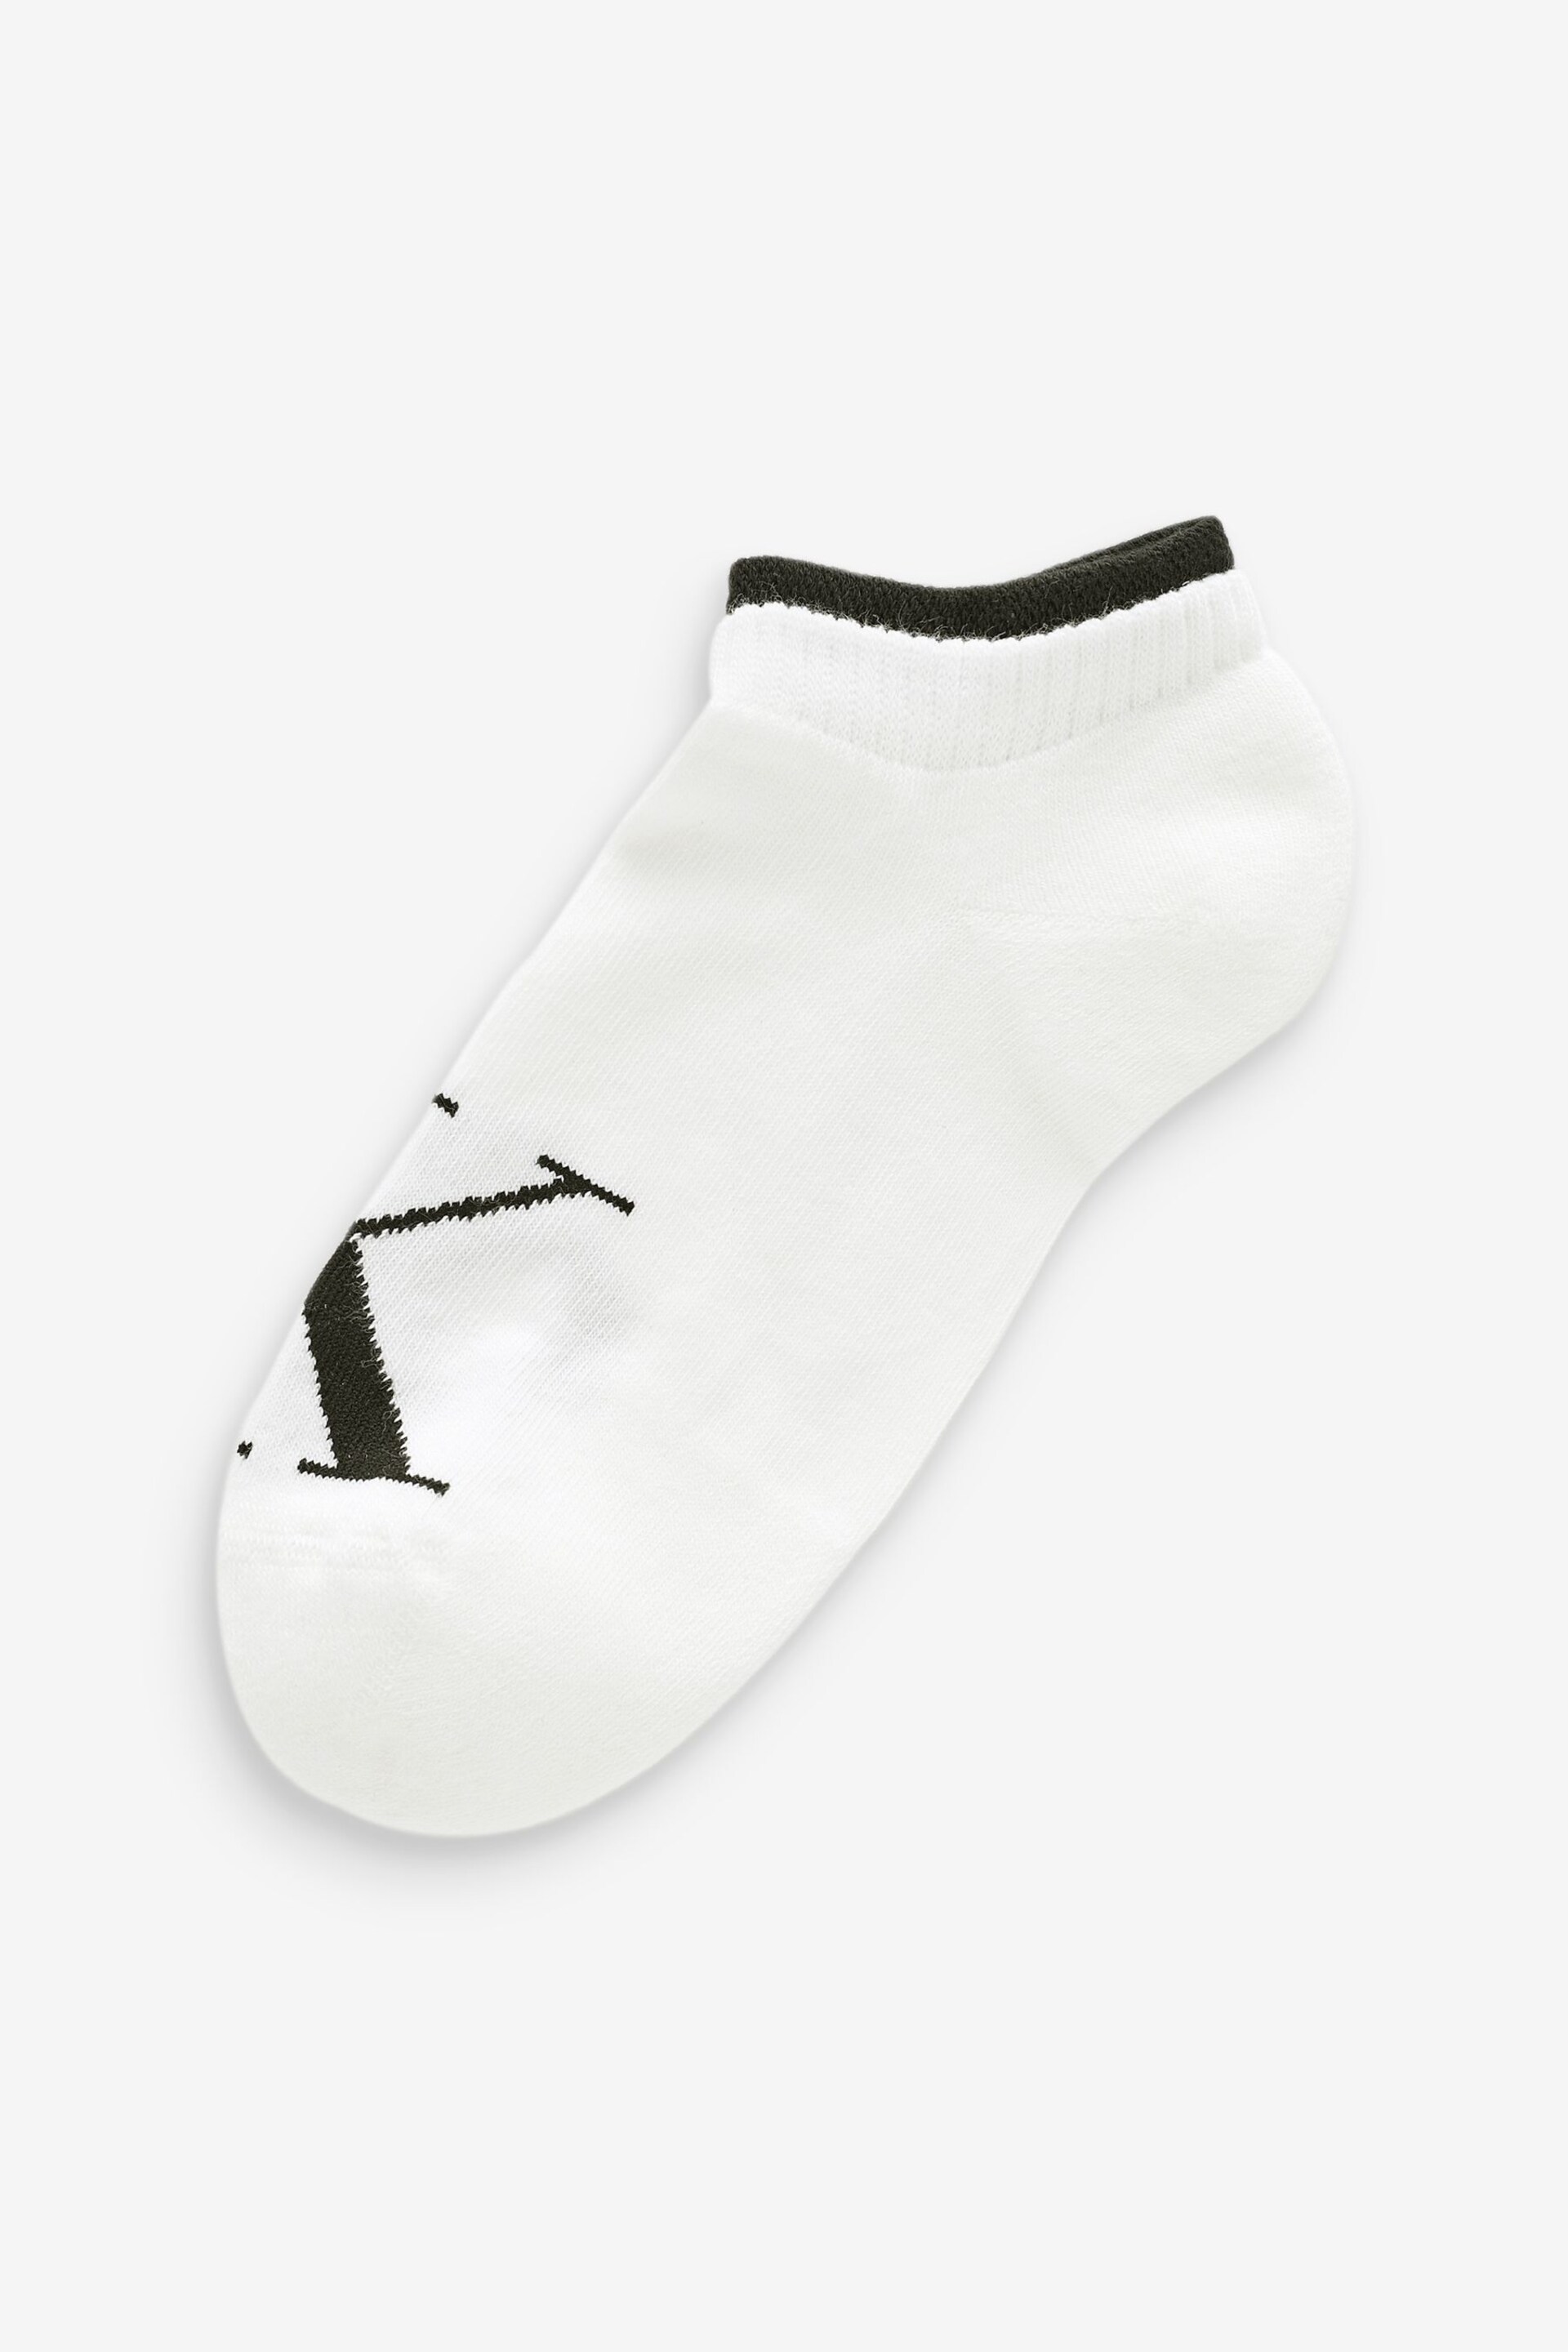 Calvin Klein White Womens Sneaker Socks 2 Pack - Image 3 of 3